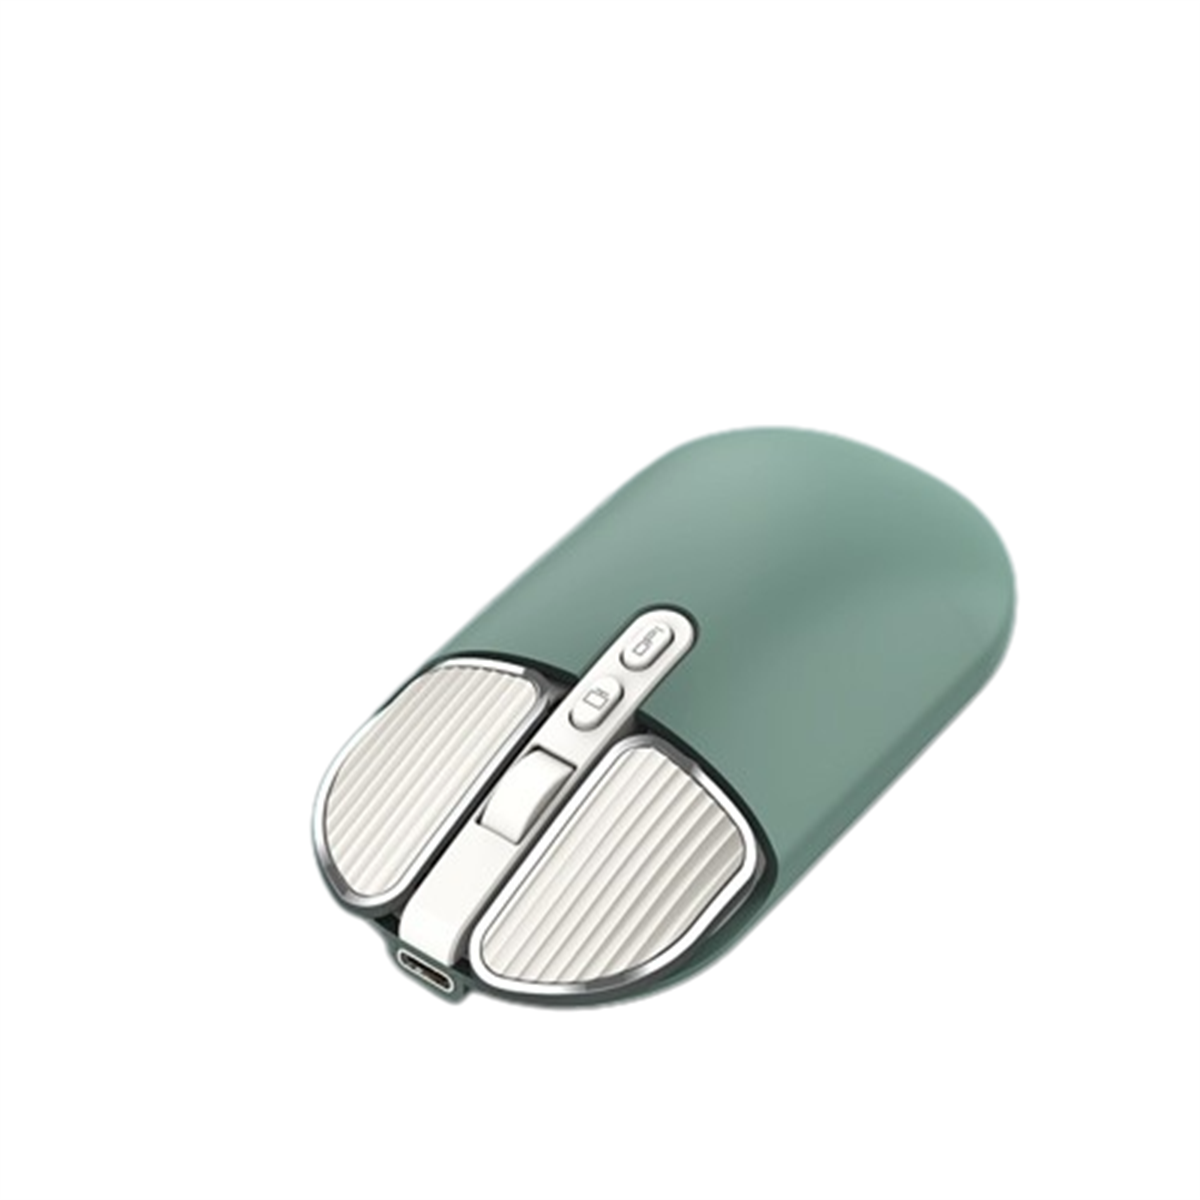 Dual-Mode-Verbindung, Wireless Maus, - Positionierung M203 Mouse SYNTEK präzise grün